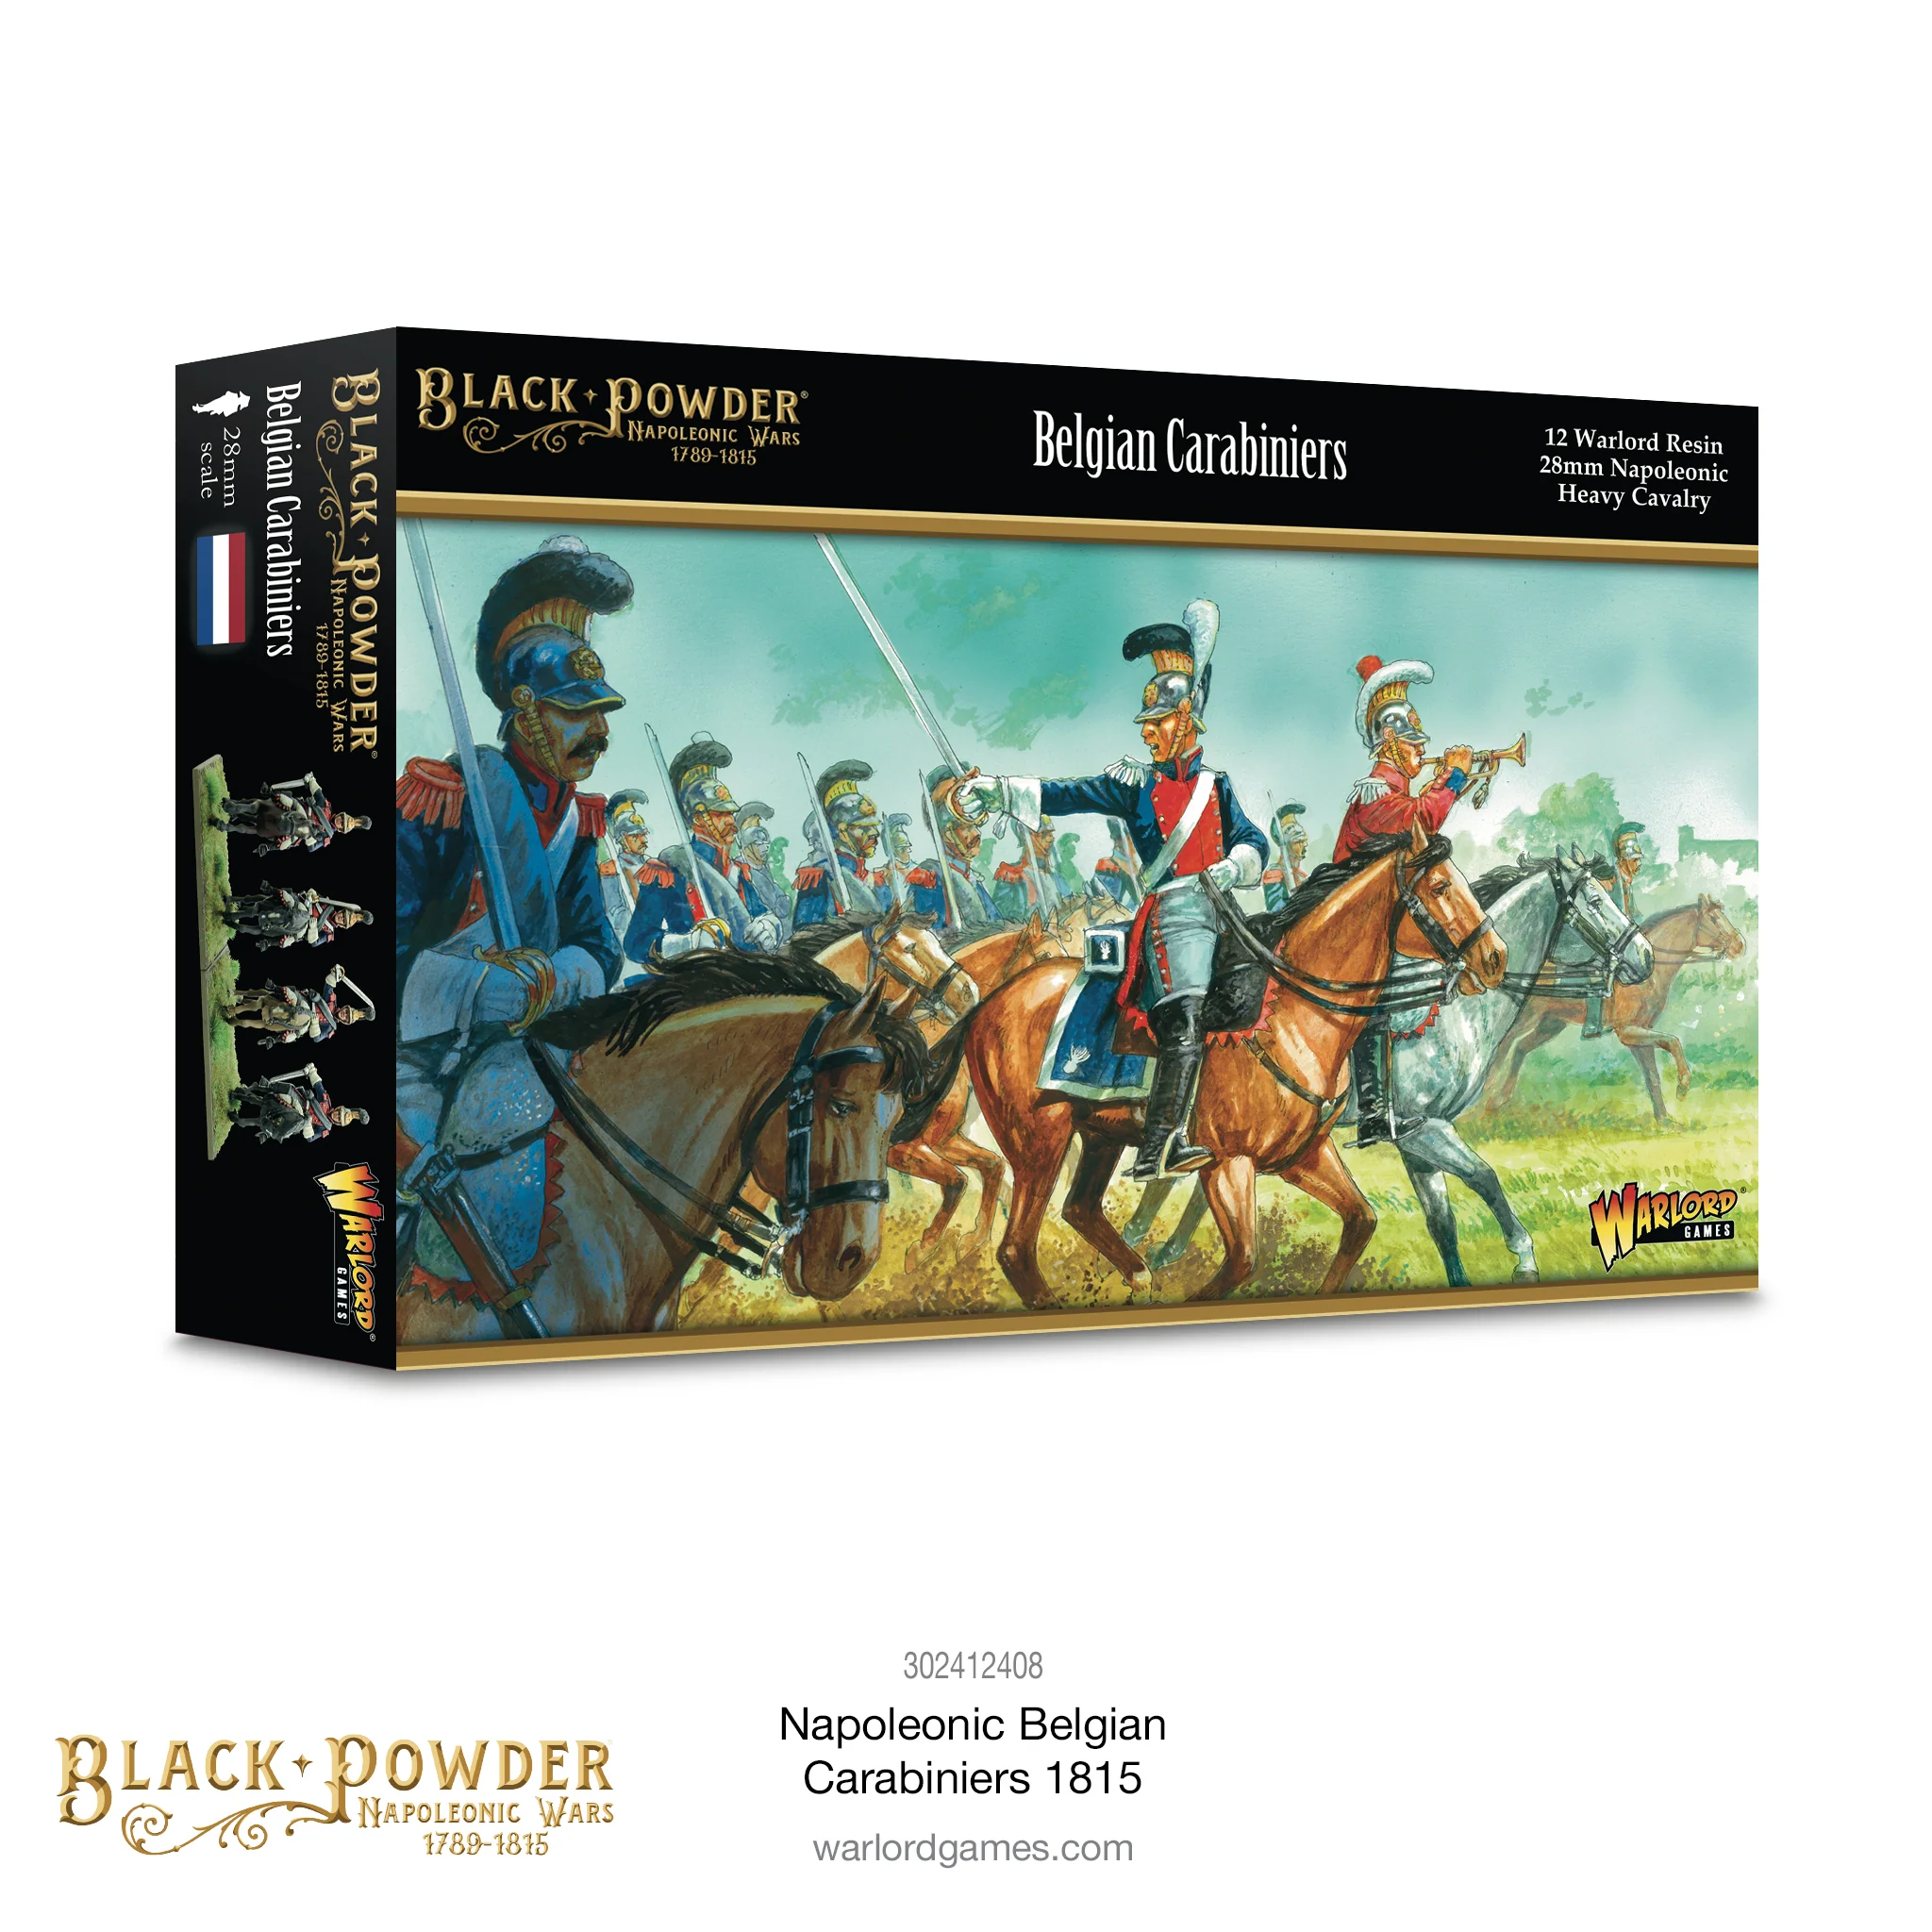 Black Powder Napoleonic Wars: Belgian Carabiniers 1815 